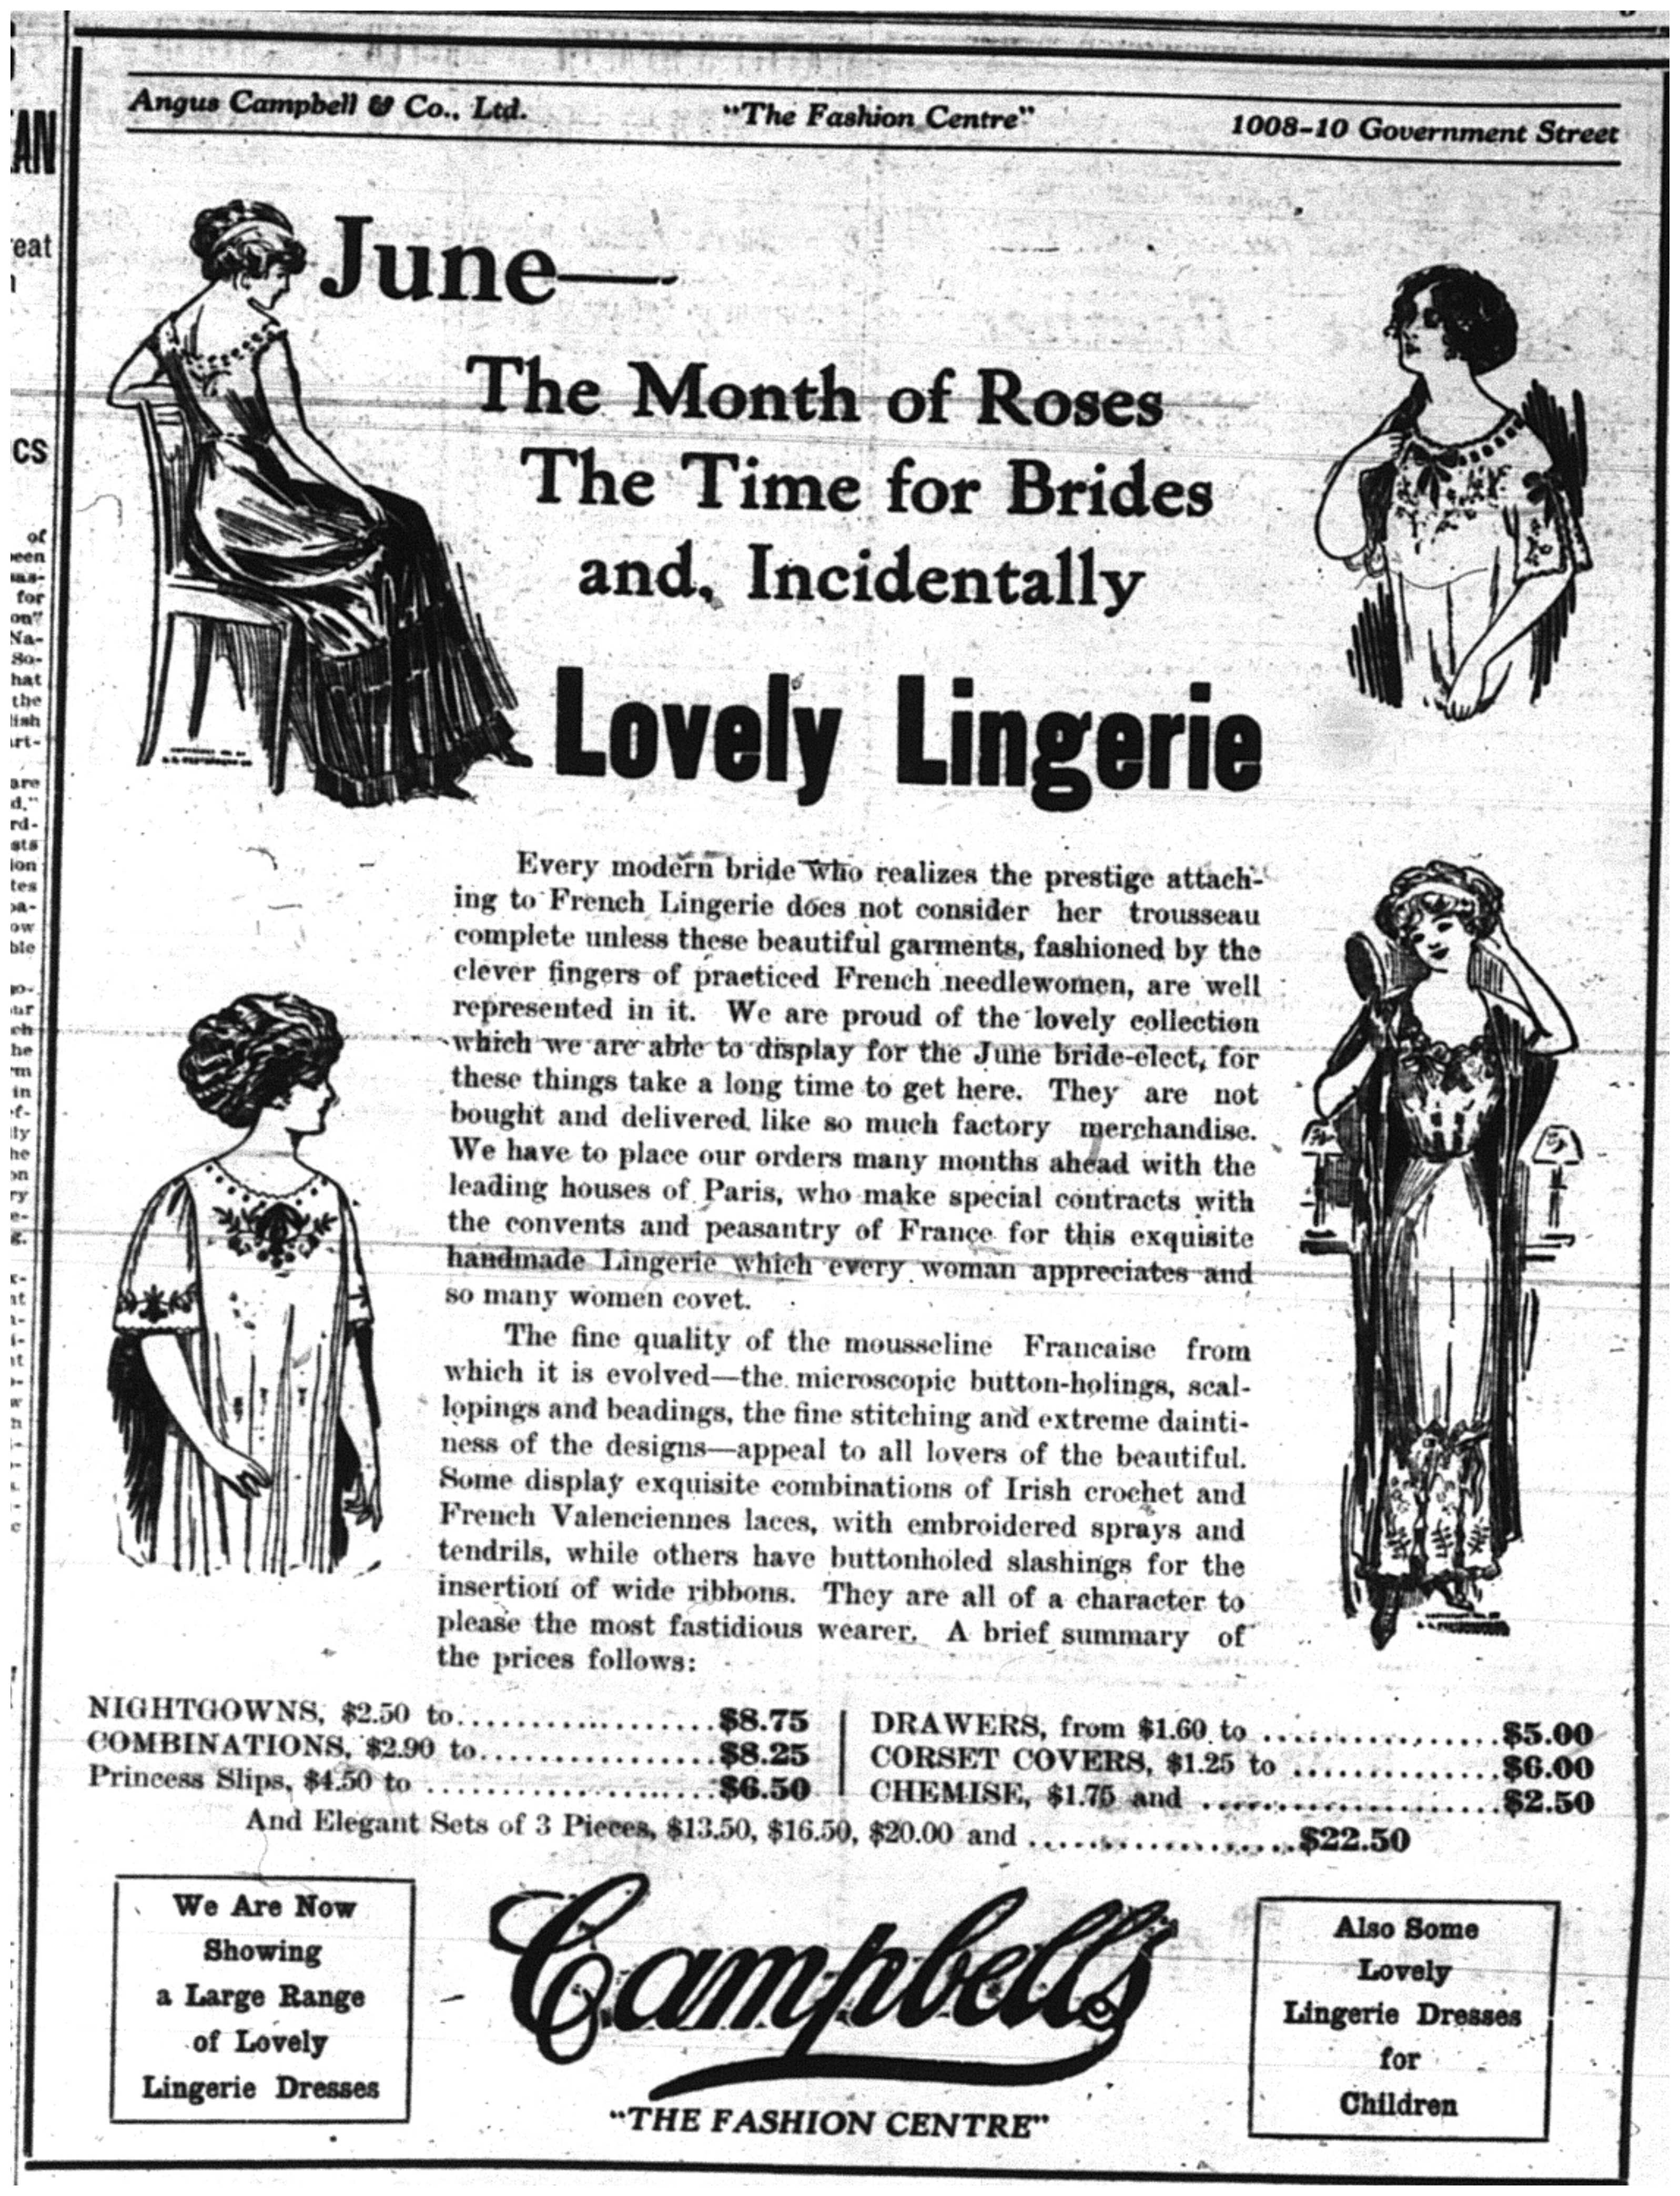 "Lovely Lingerie"